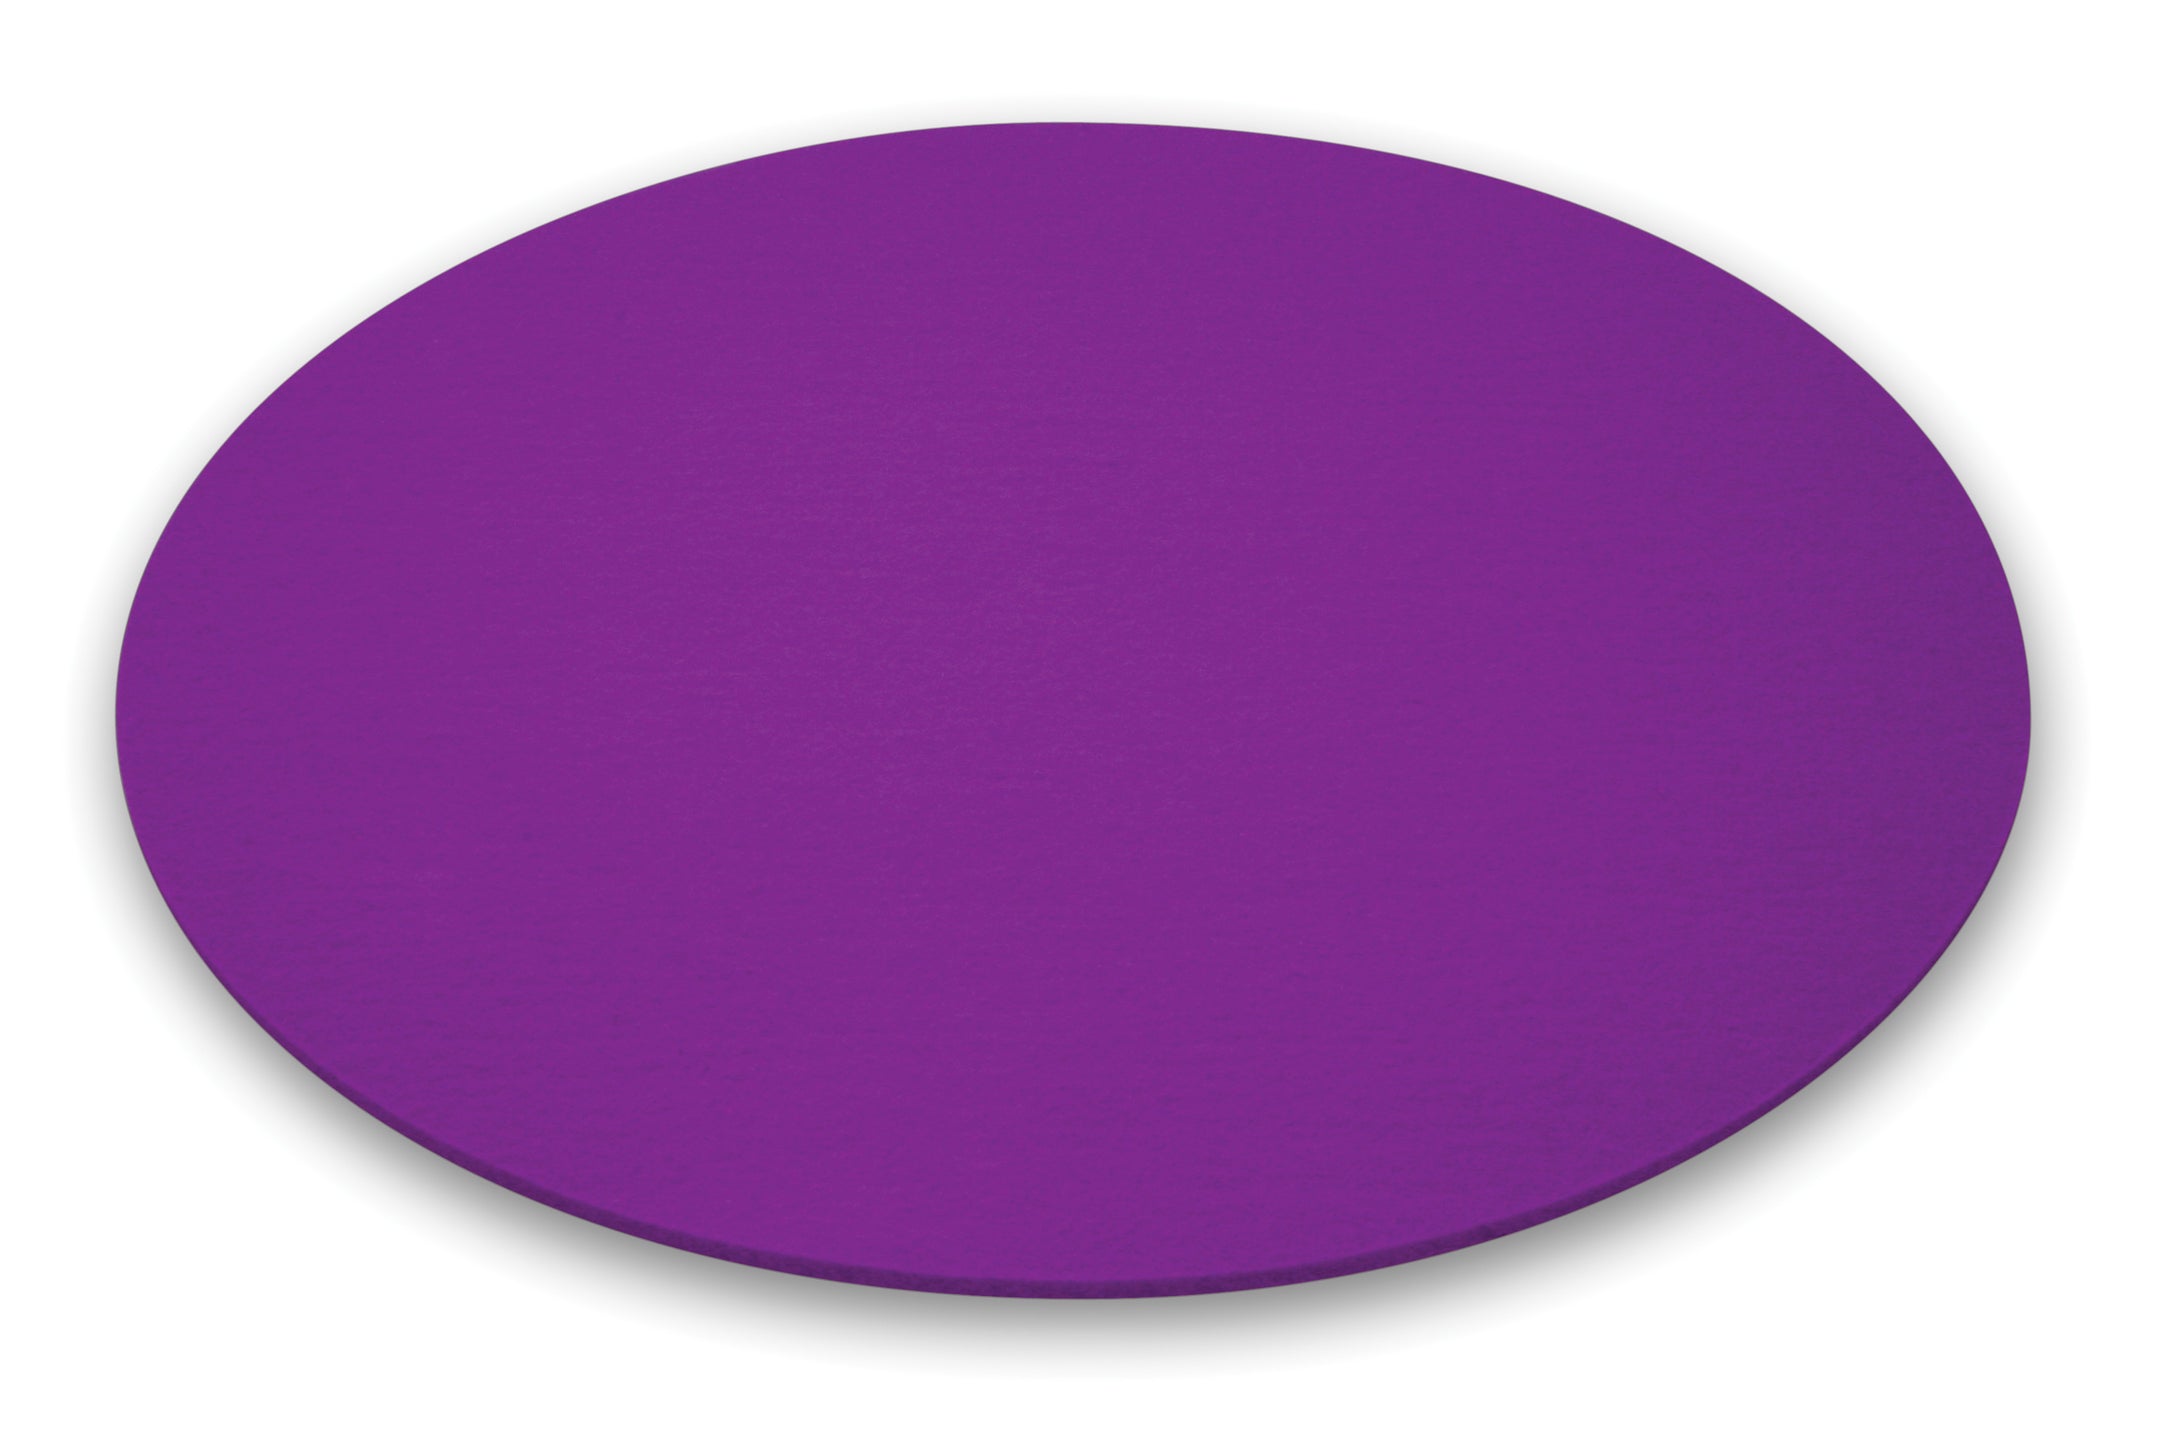 Runde Filzauflage für den Leuchttisch BUBBLE von Moree in violett; Ø 40cm.